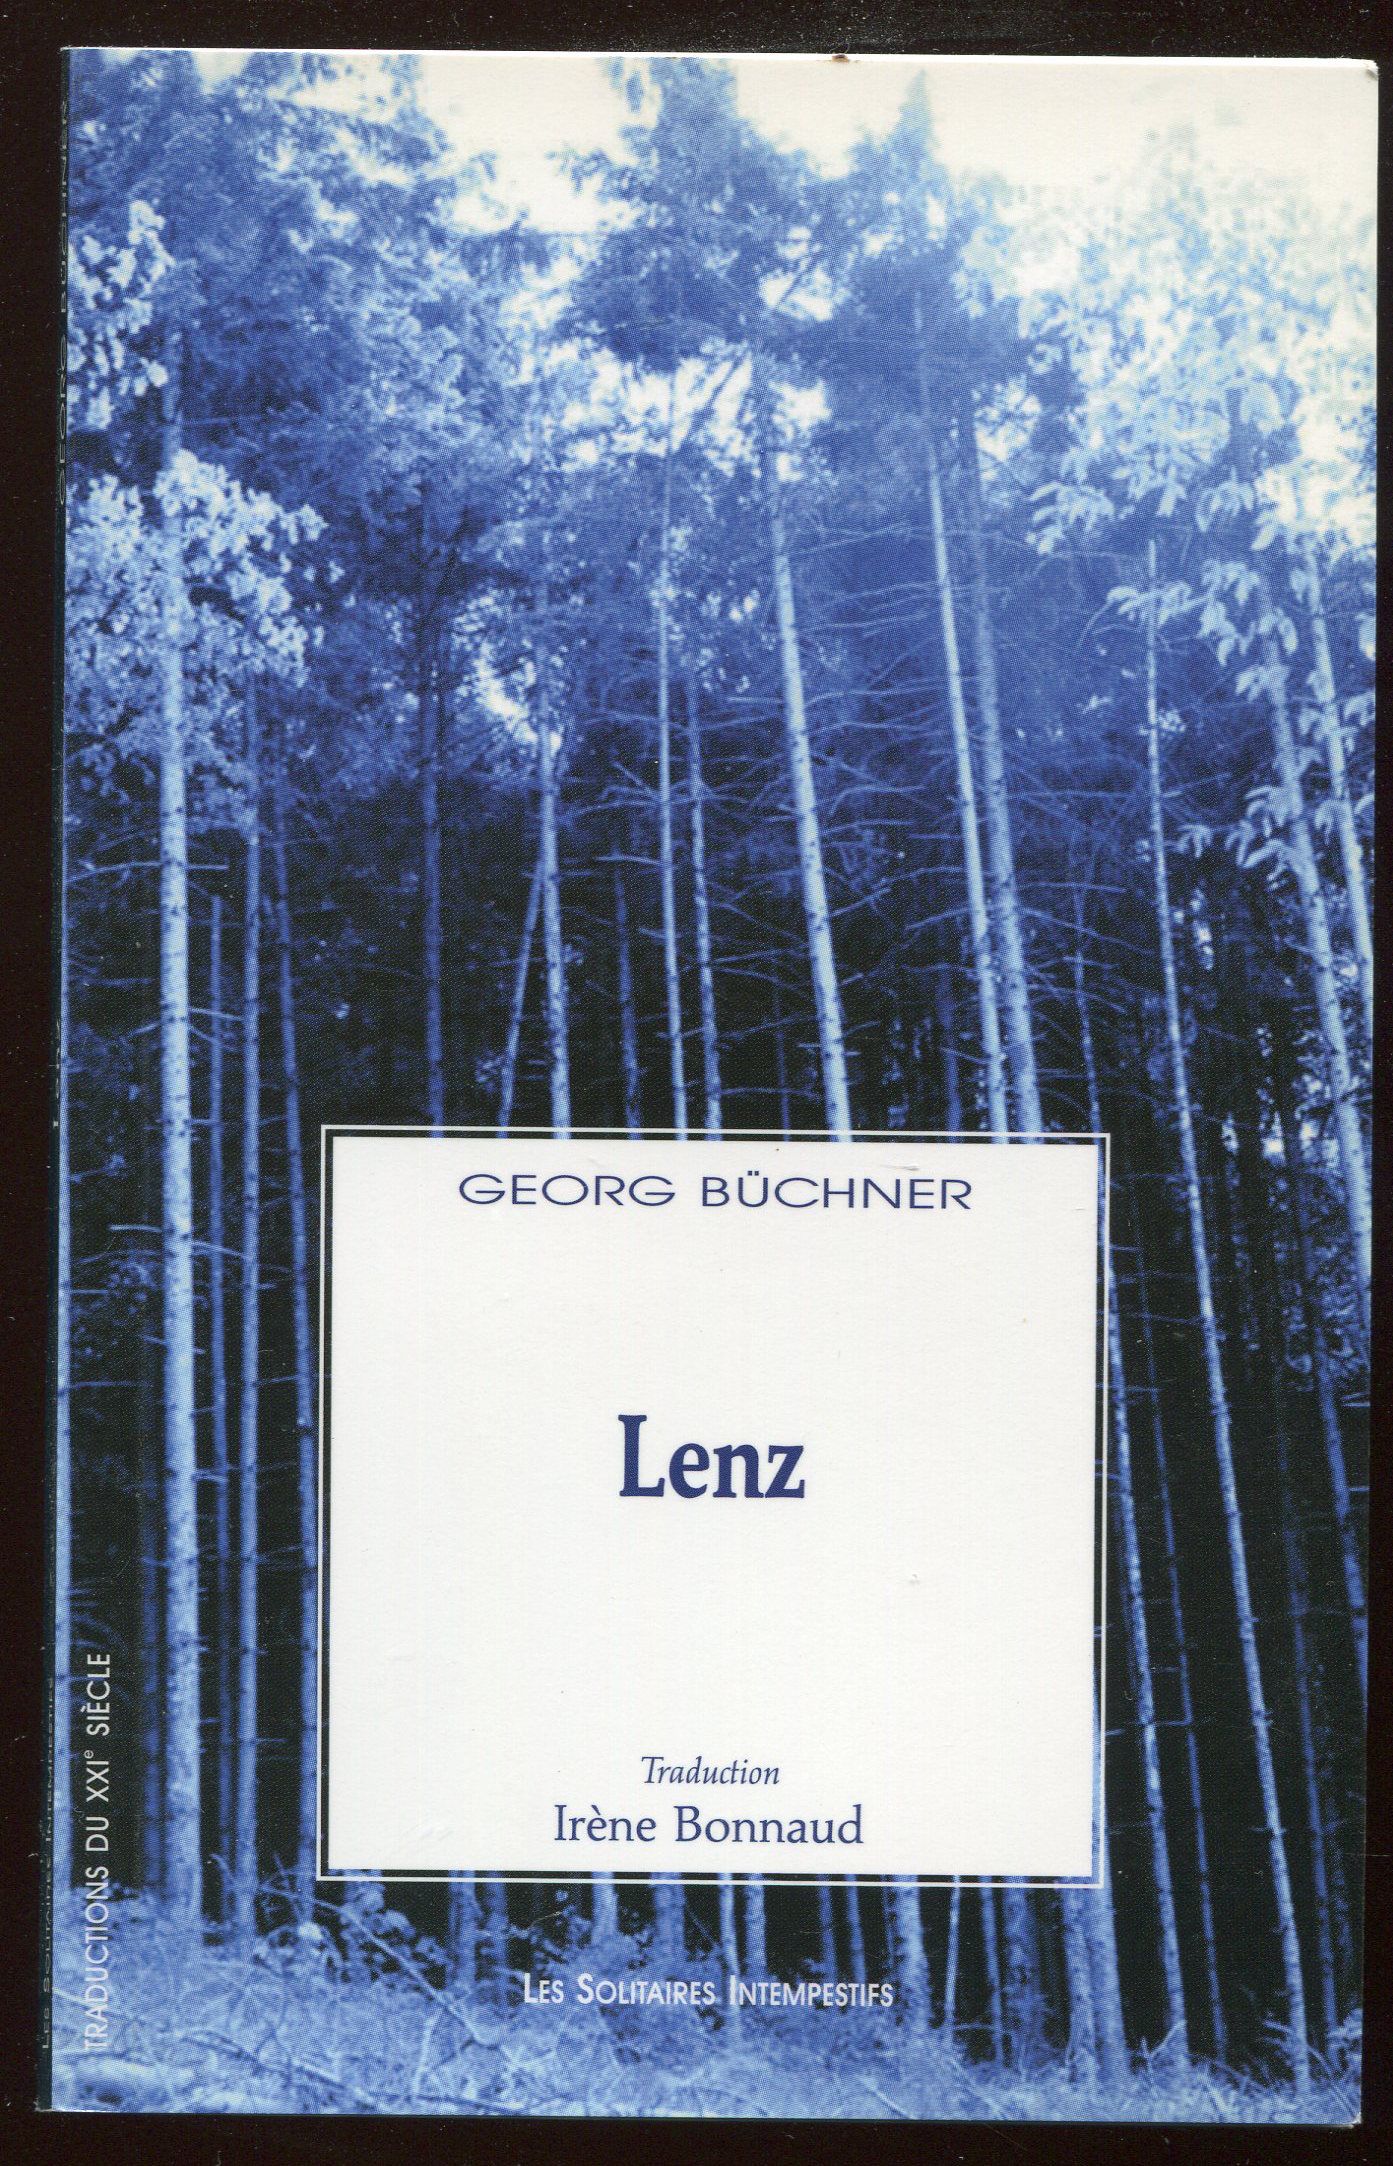 Lenz - Georg Büchner